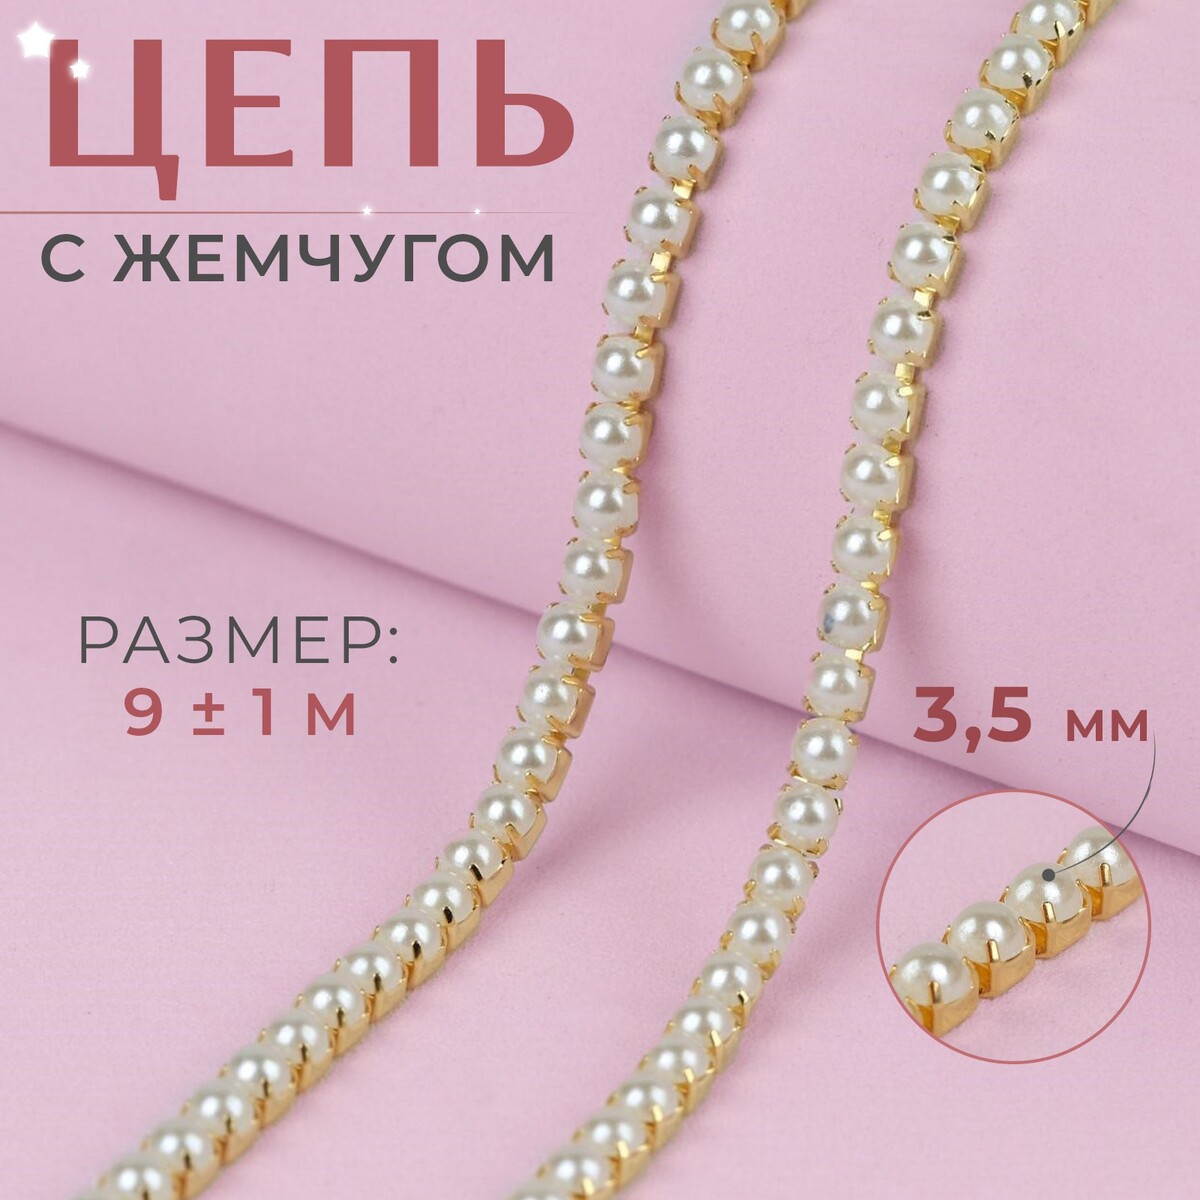 Цепь с жемчугом, металл, пластик, 3,5 мм, 9 ± 1 м, цвет золотой цепь с жемчугом металл пластик 2 мм ss6 9 ± 1 м розовый